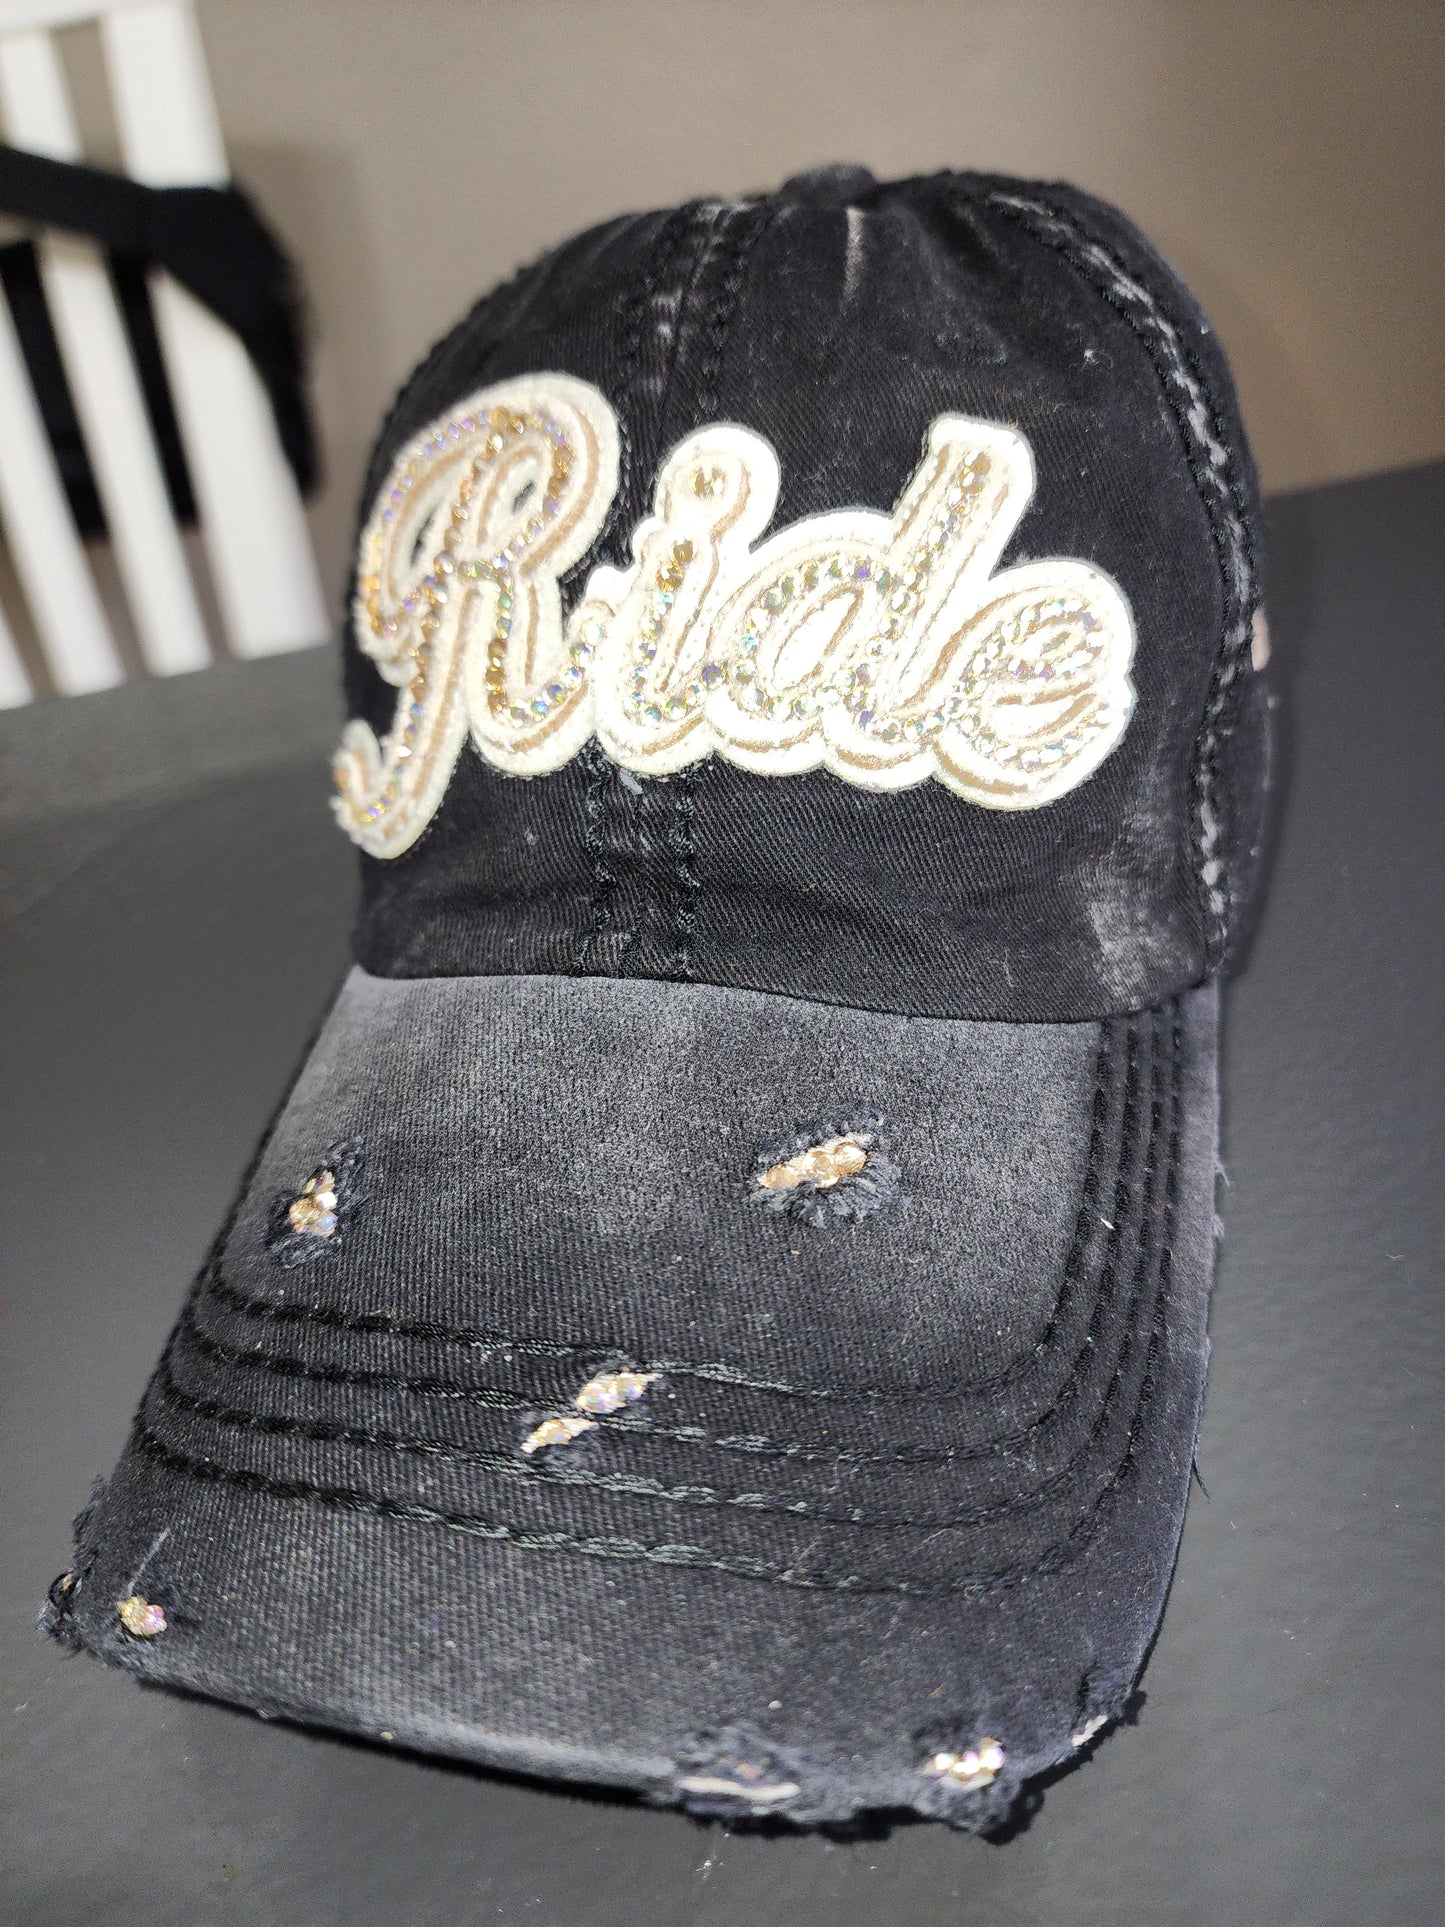 Custom Bling "RIDE" baseball cap